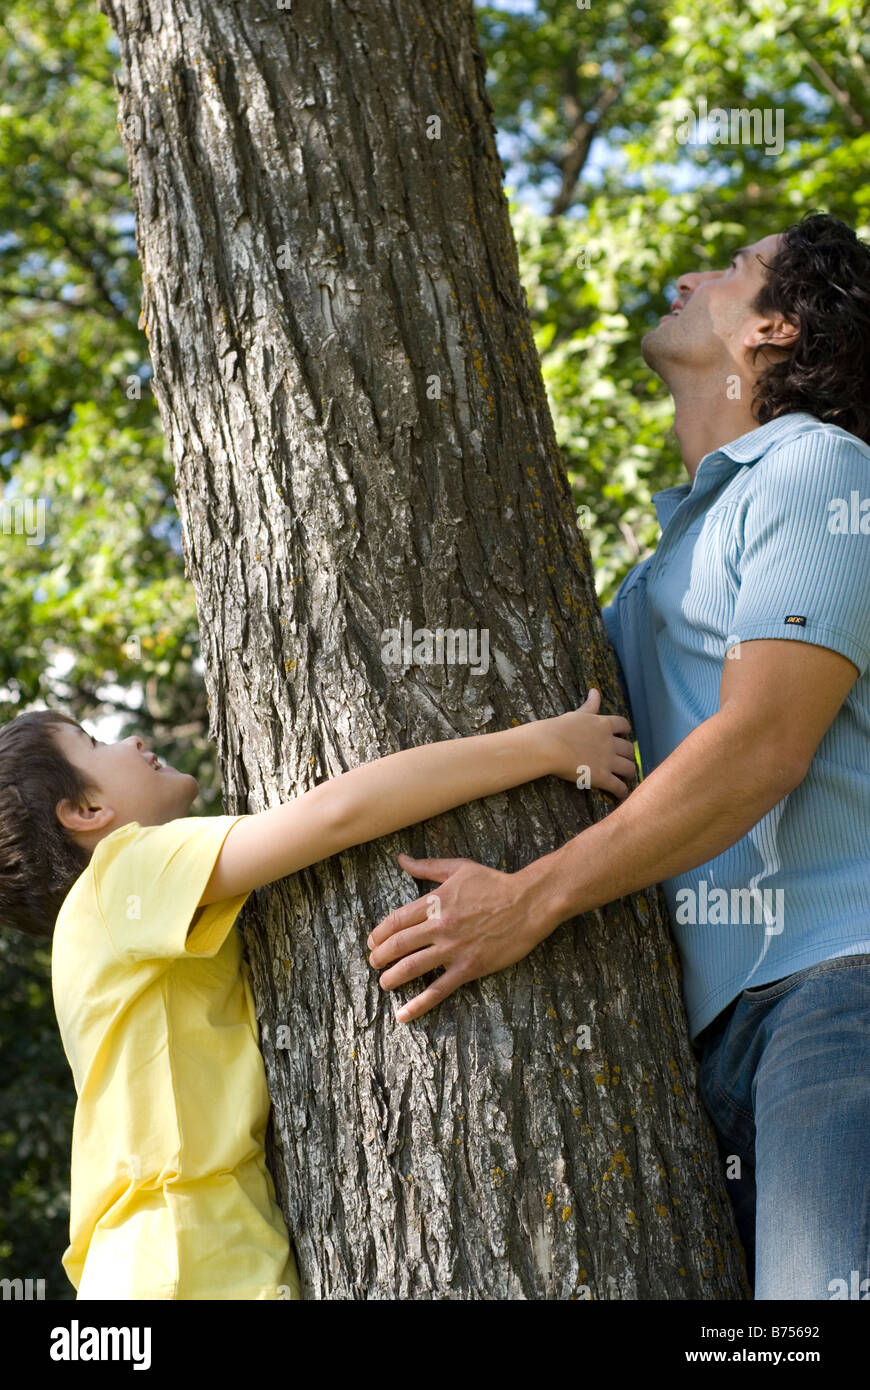 Man and boy tenir tronc d'arbre, à la recherche vers le haut, Winnipeg, Canada Banque D'Images